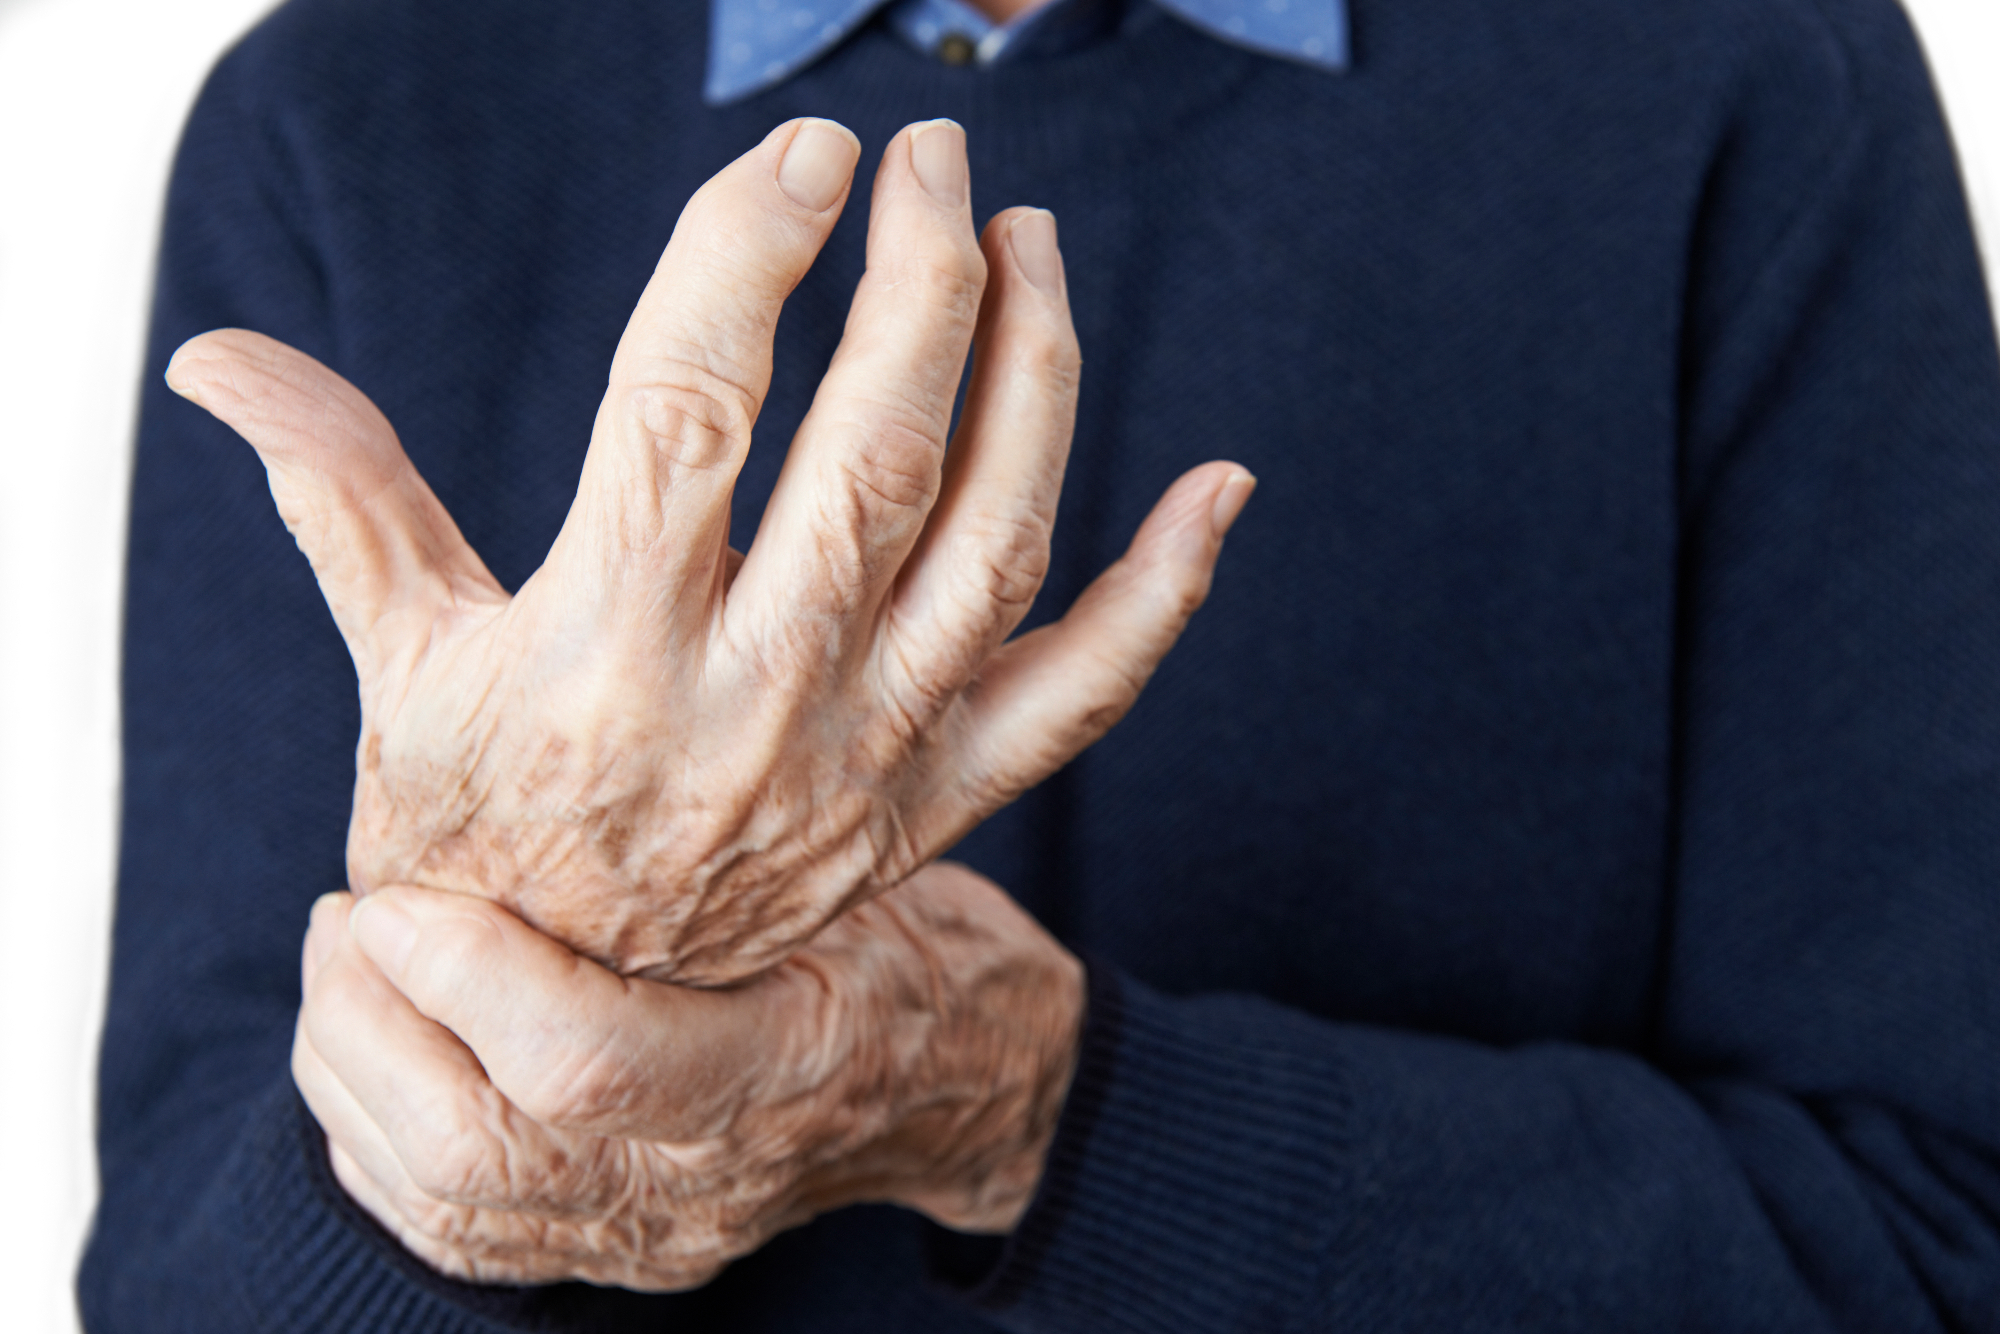 Revmatoidni artritis je nekaj kar ljudje znajo zelo dobro skrivati